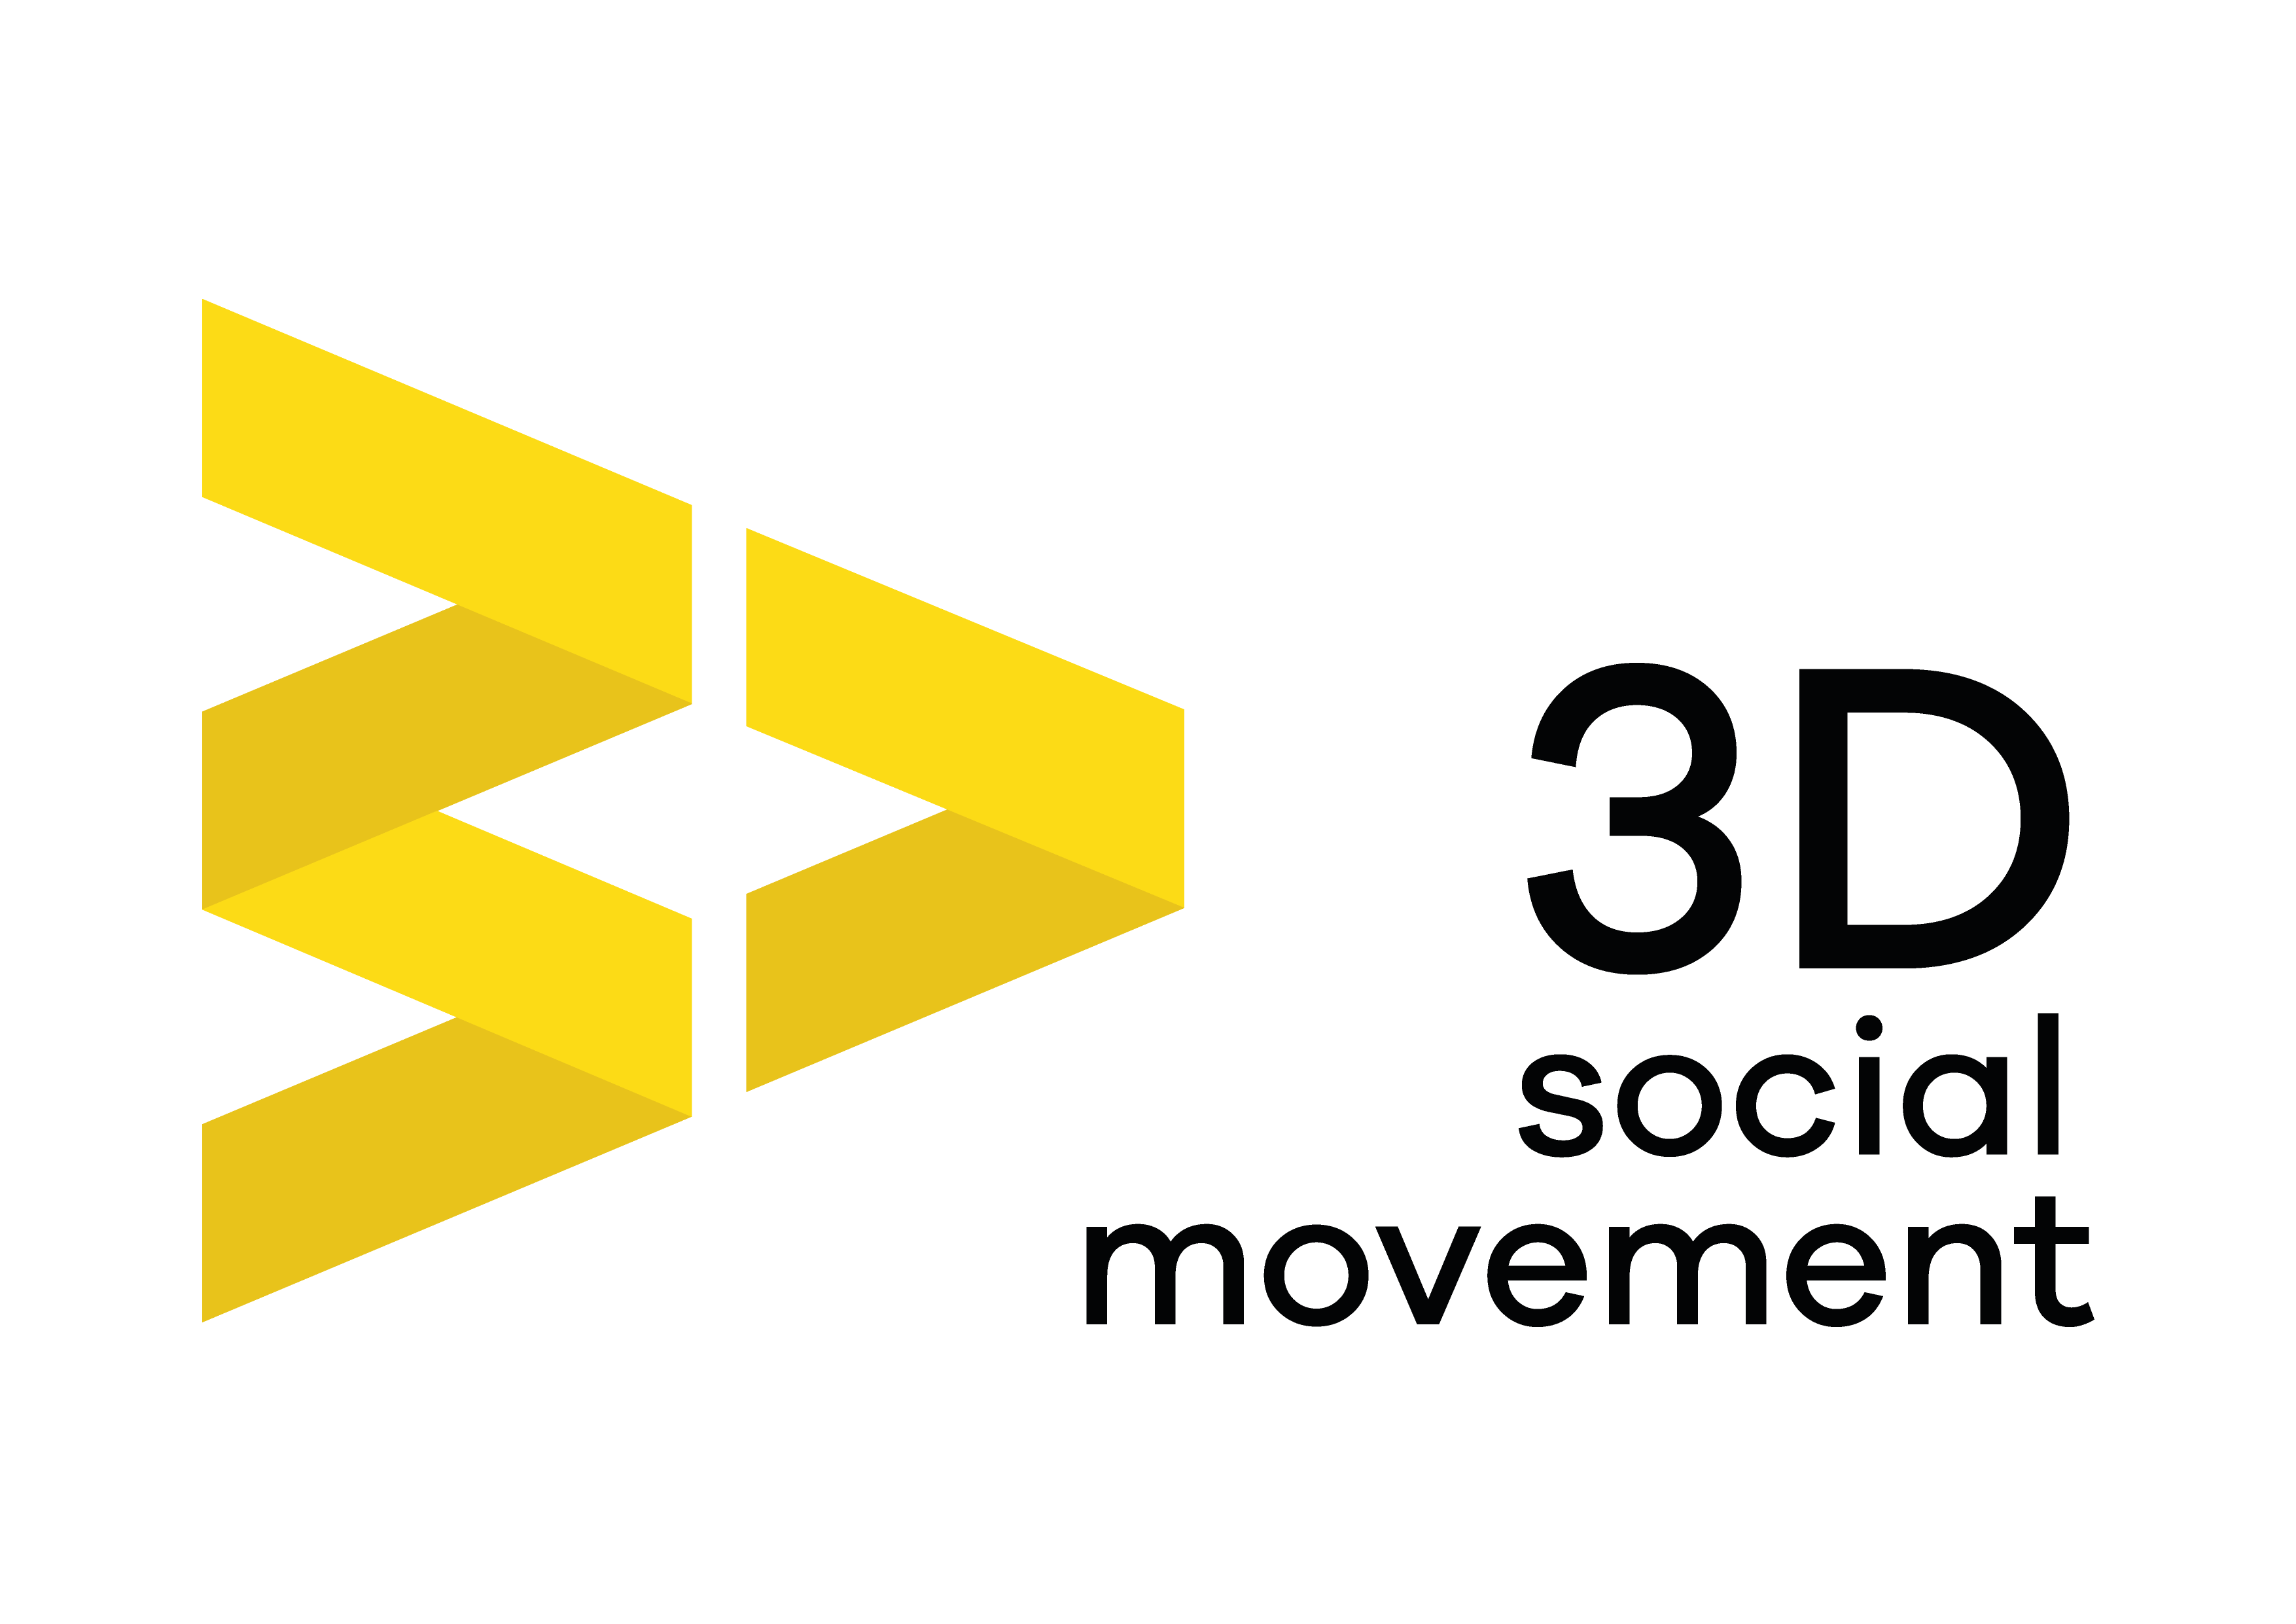 3D Social Movement